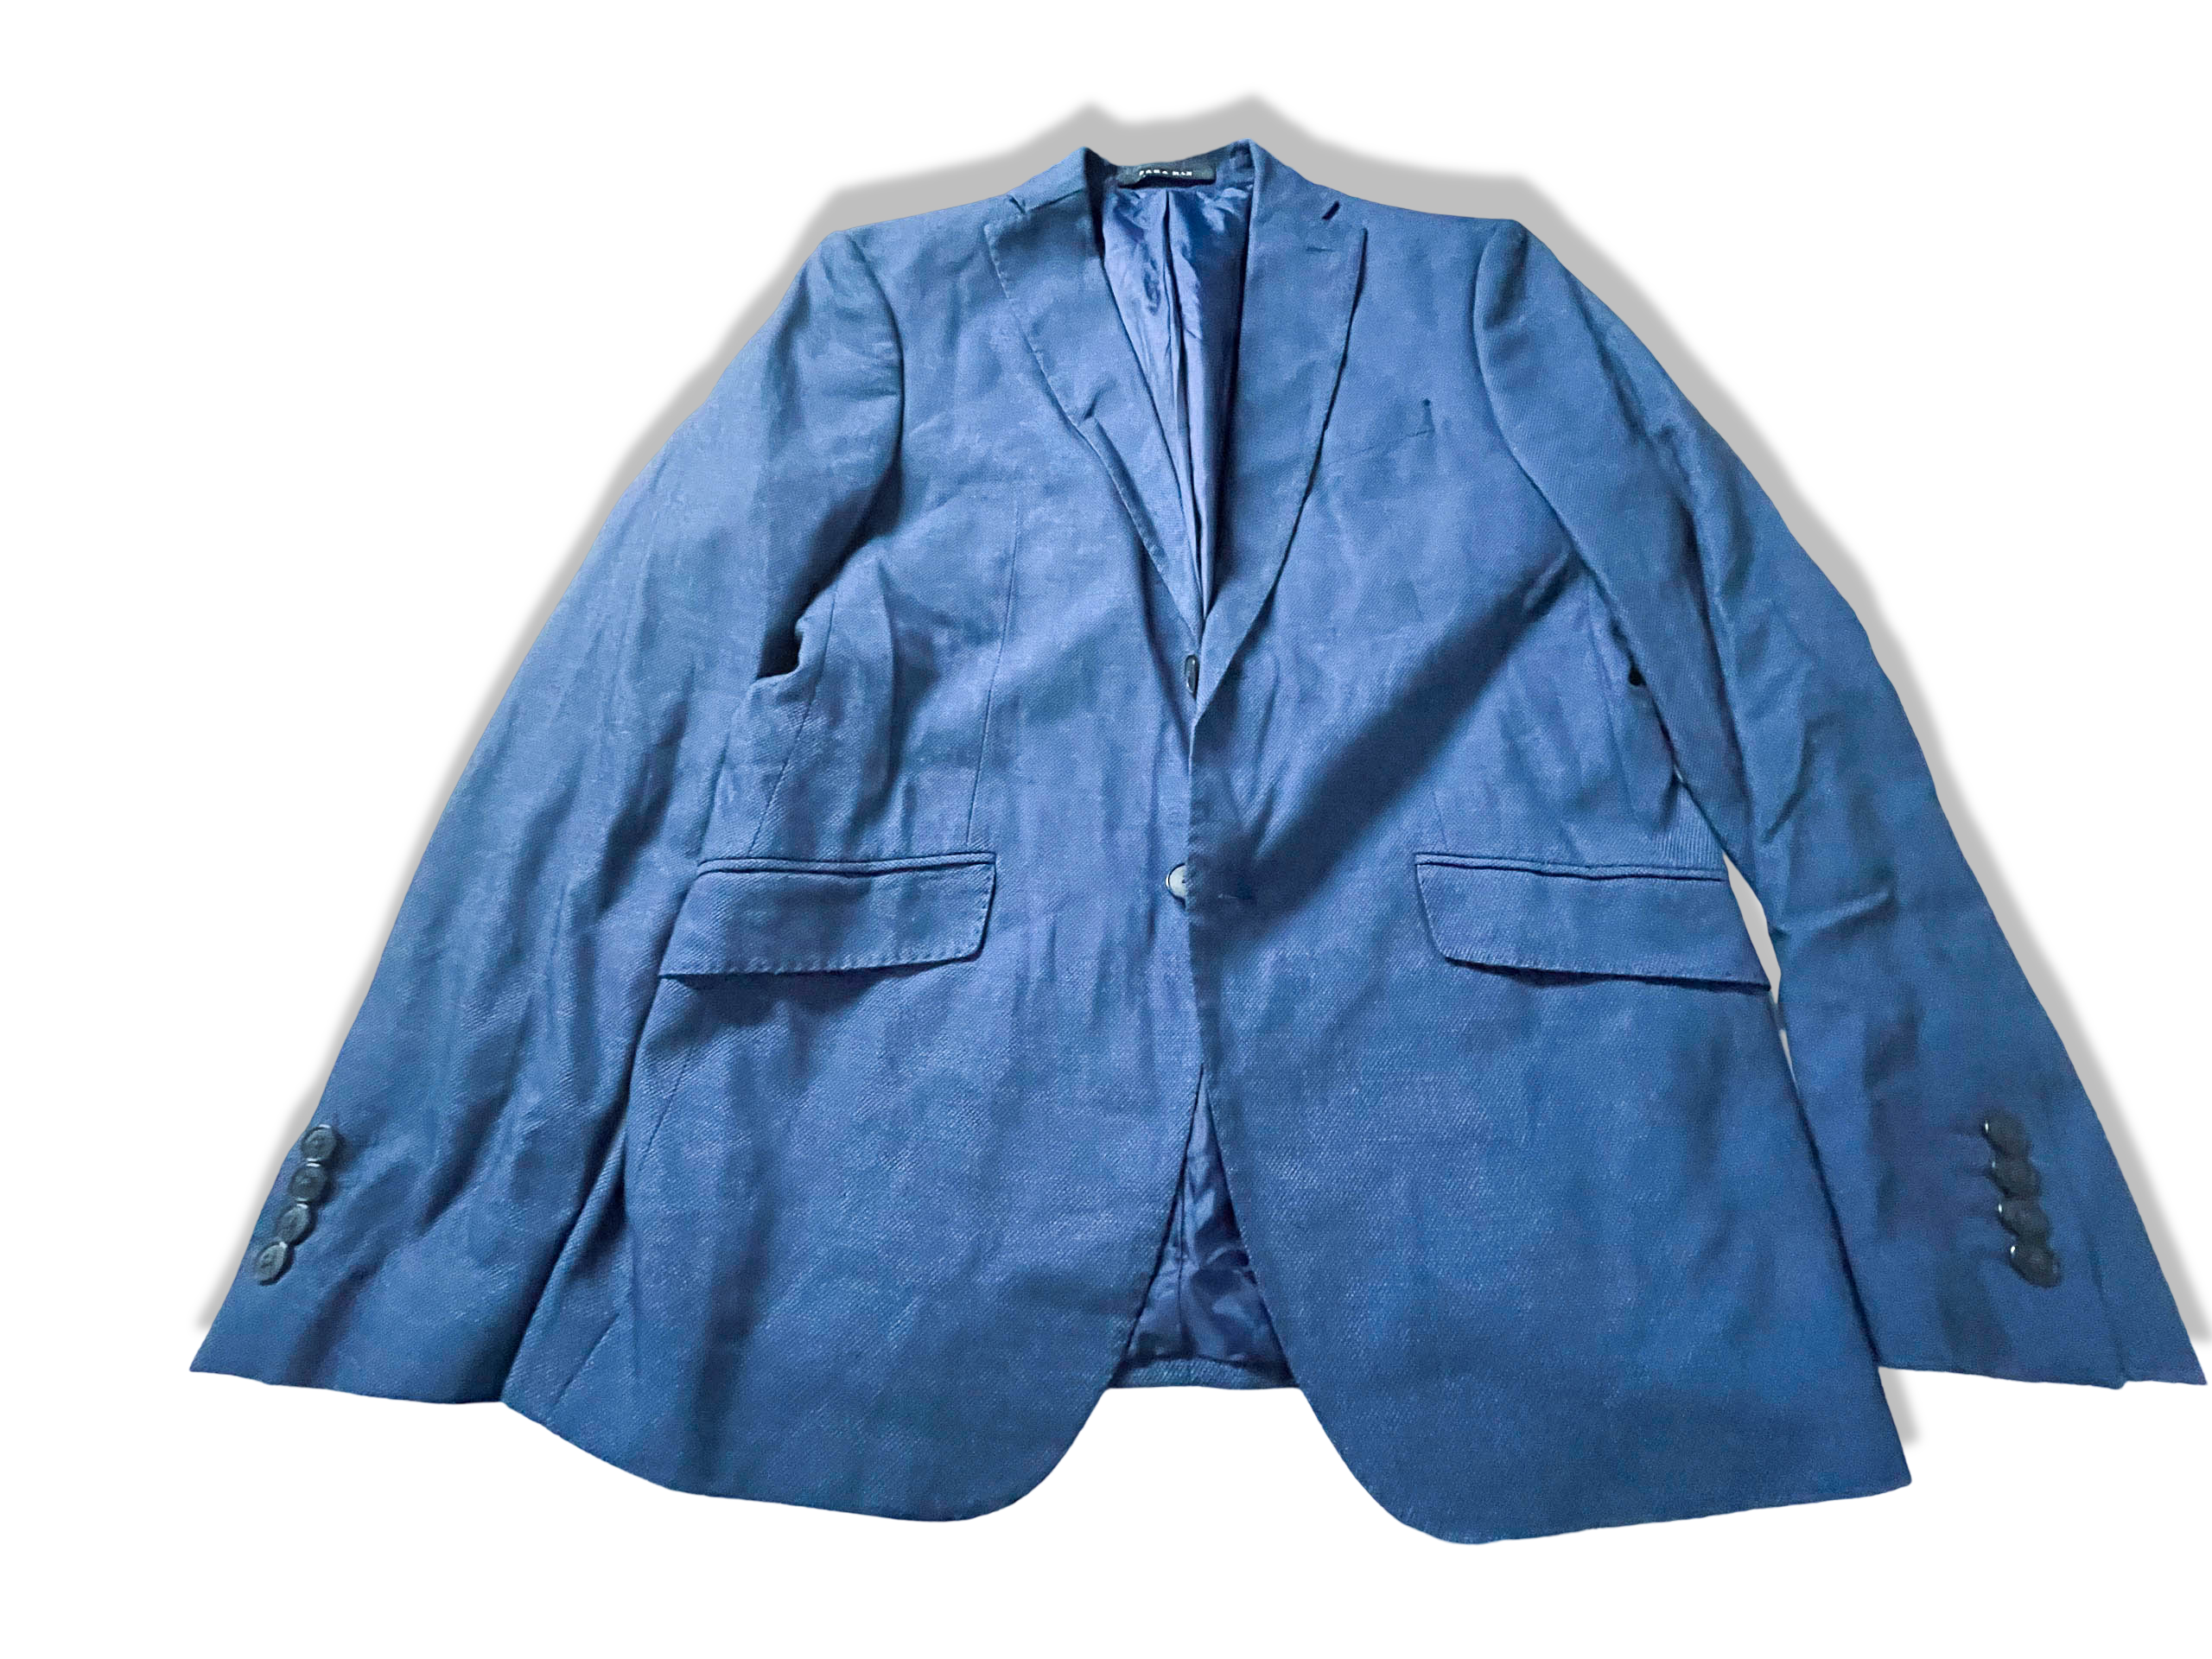 Zara Man Blue classic fit made in Turkey blazers in EU 50 USA 40|L32W22|SKU 3898